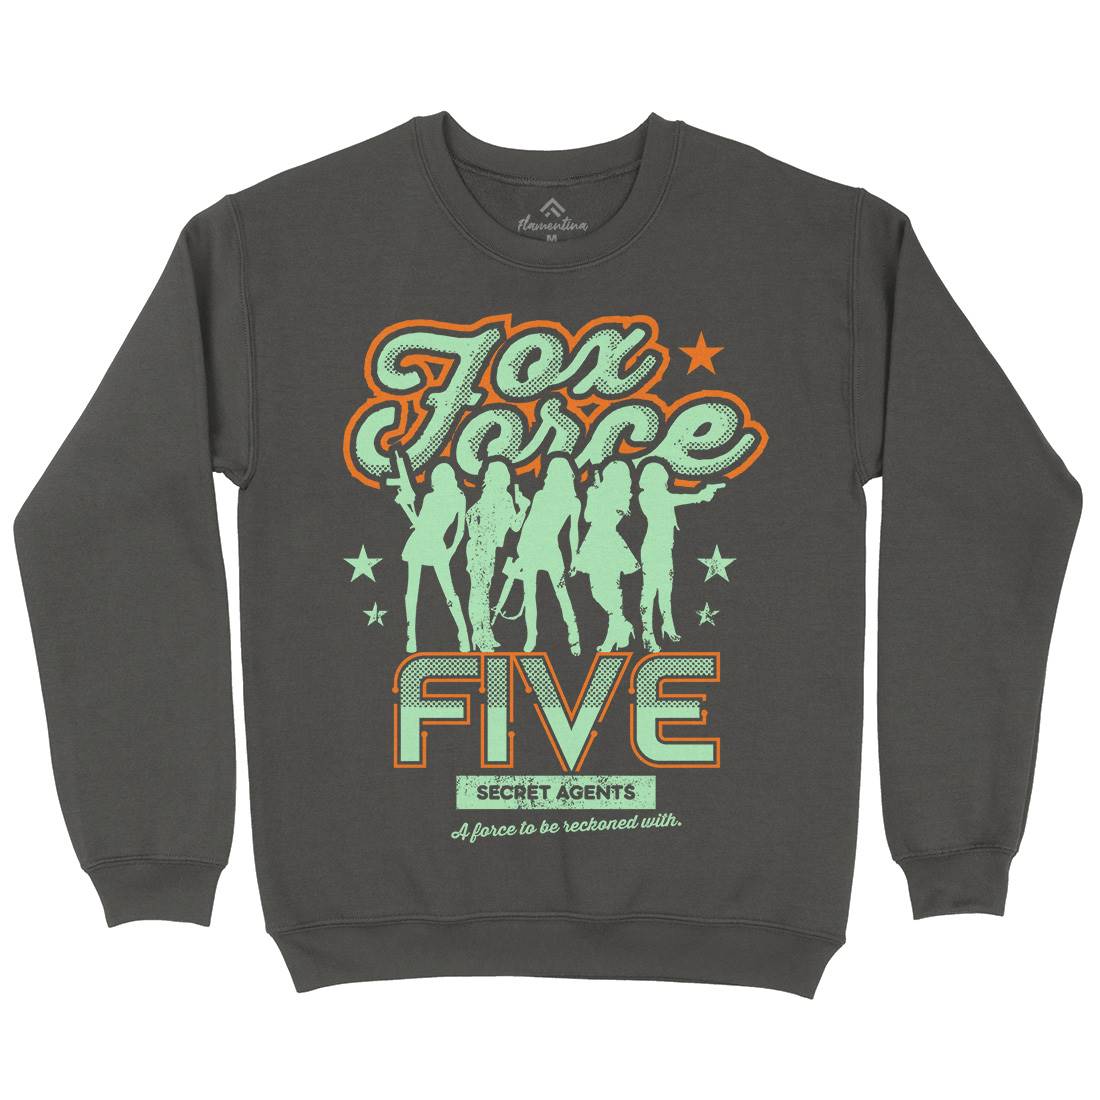 Fox Force Five Kids Crew Neck Sweatshirt Retro D223